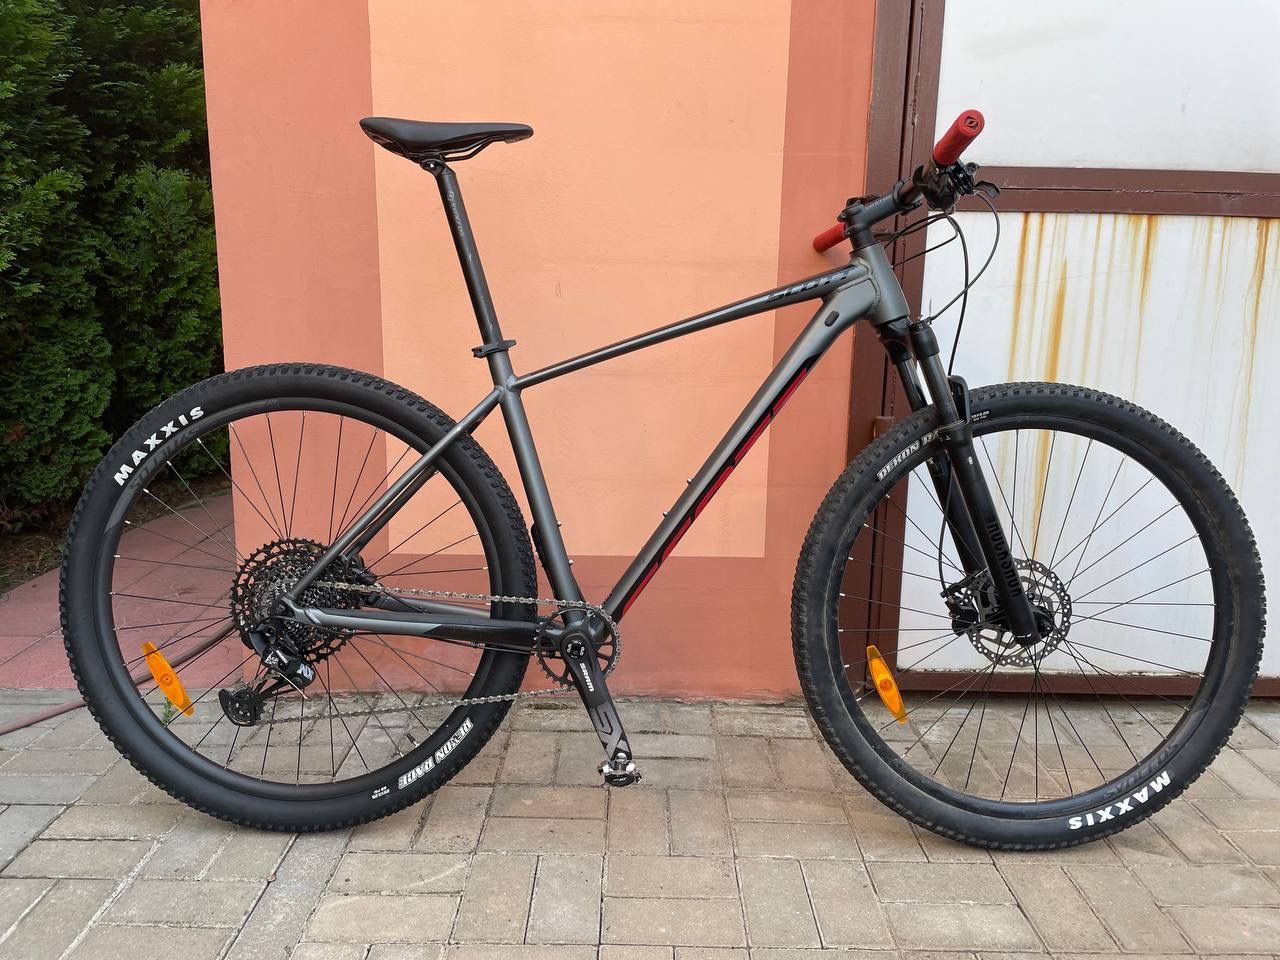 Велосипед Scott Scale 970 (2022)